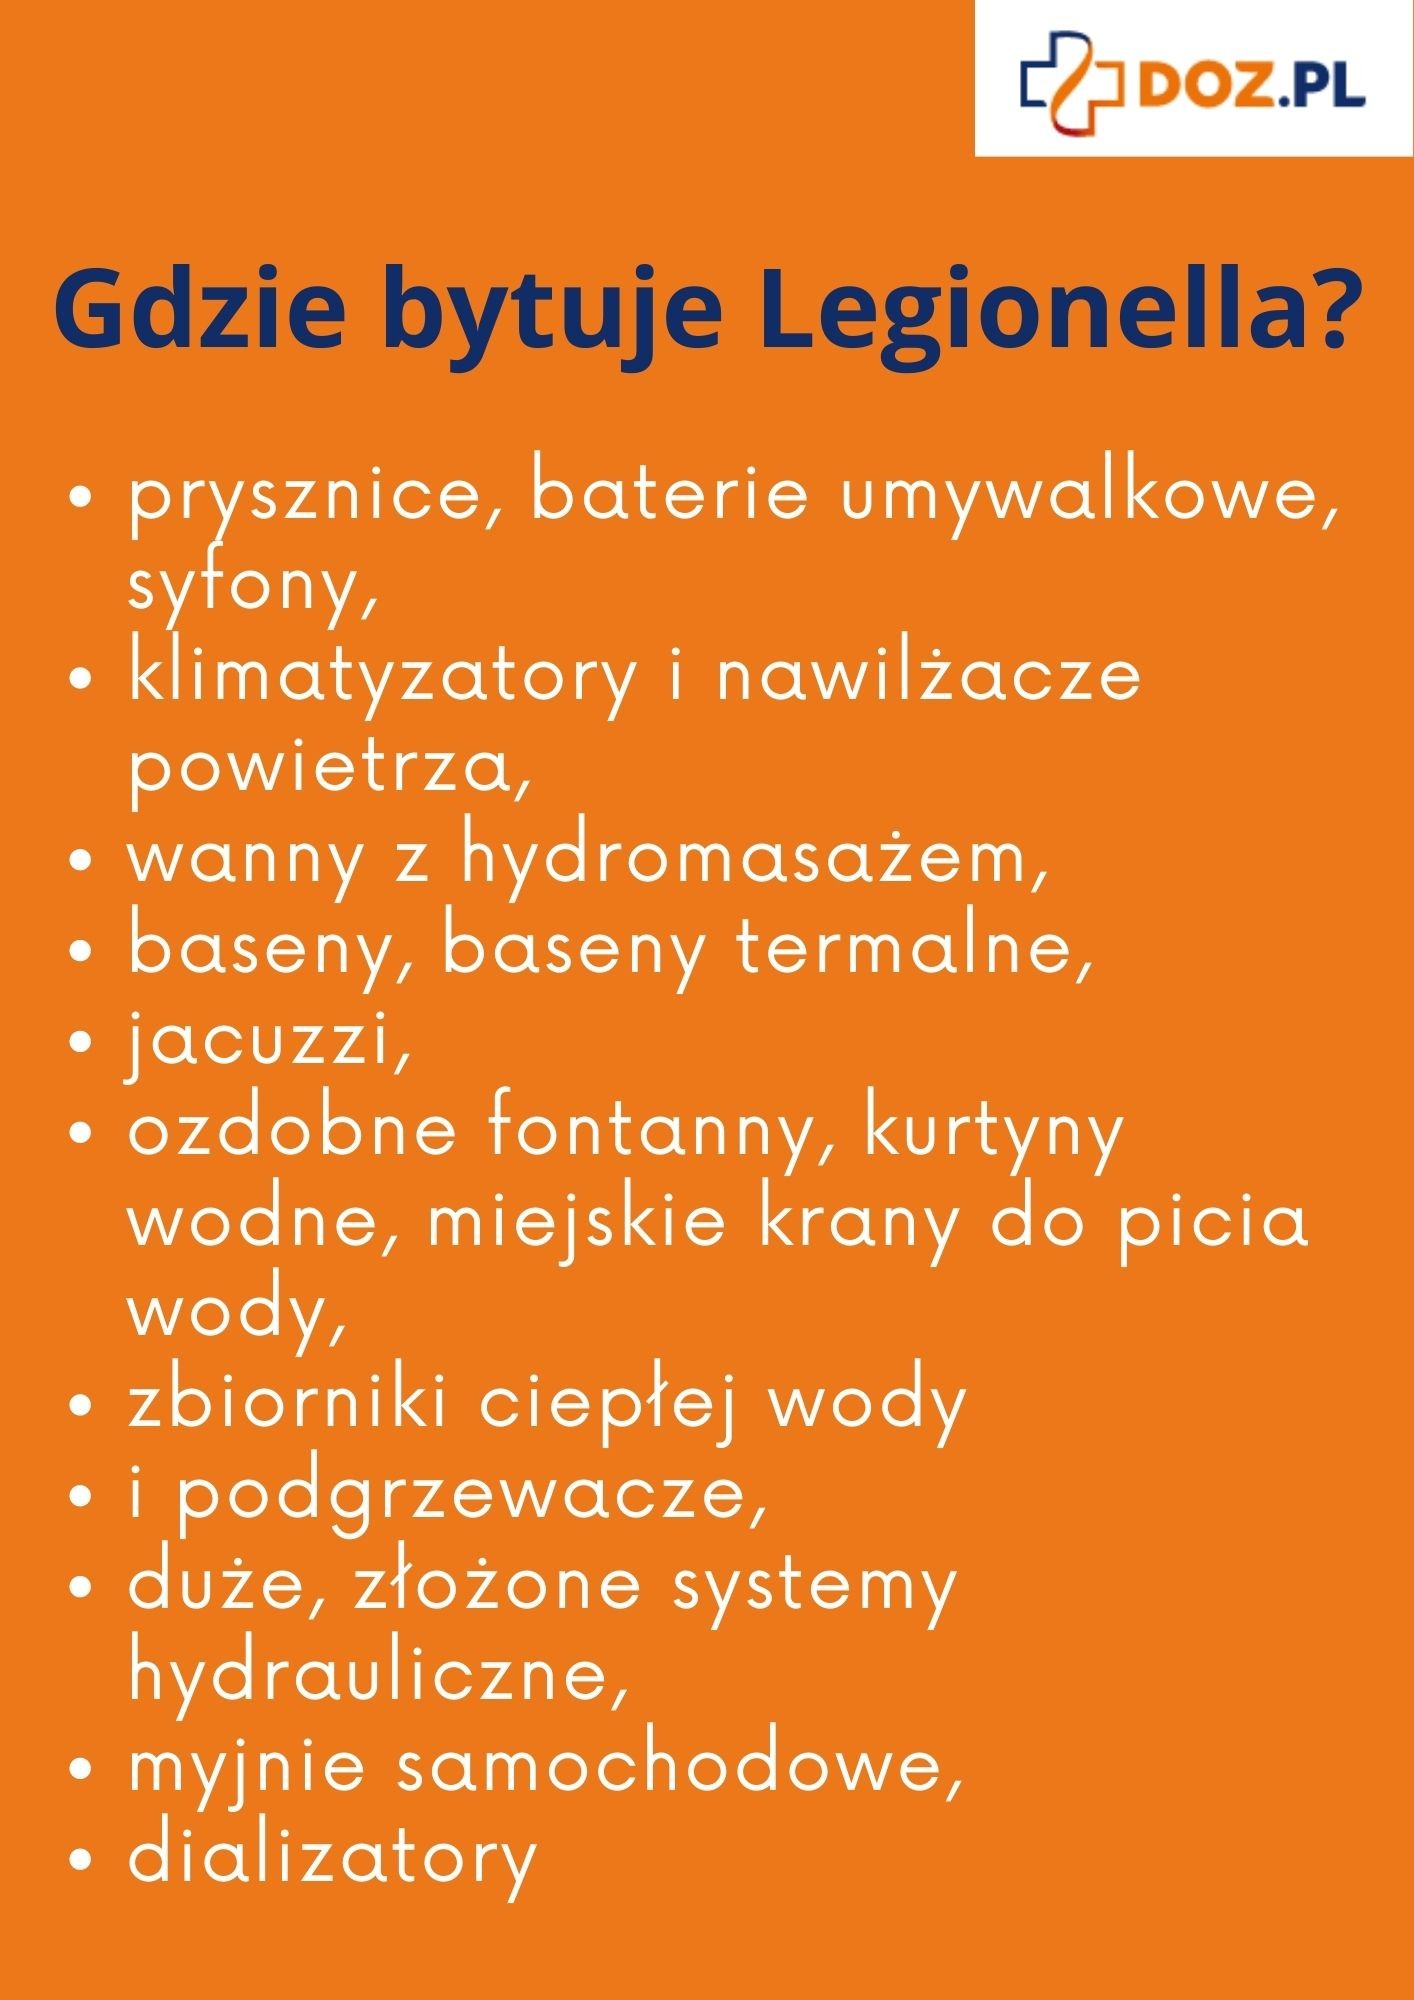 Skąd się bierze Legionella pneumophila? Jakie są źródła zakażenia legionellozą?